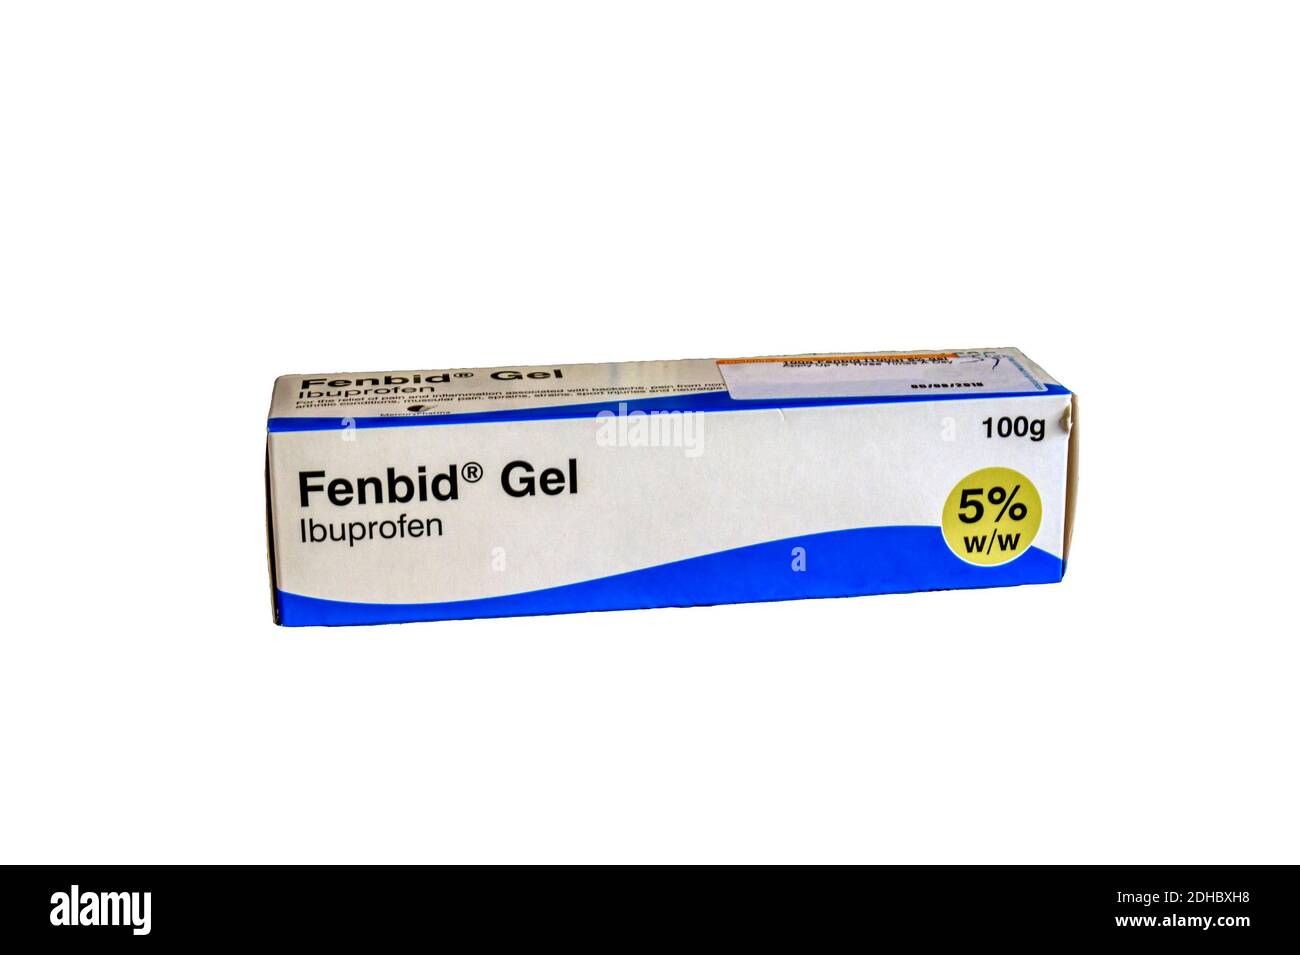 Une boîte de gel Fenbid contenant de l'ibuprofène pour application sur la peau afin de soulager la douleur et l'inflammation. Banque D'Images